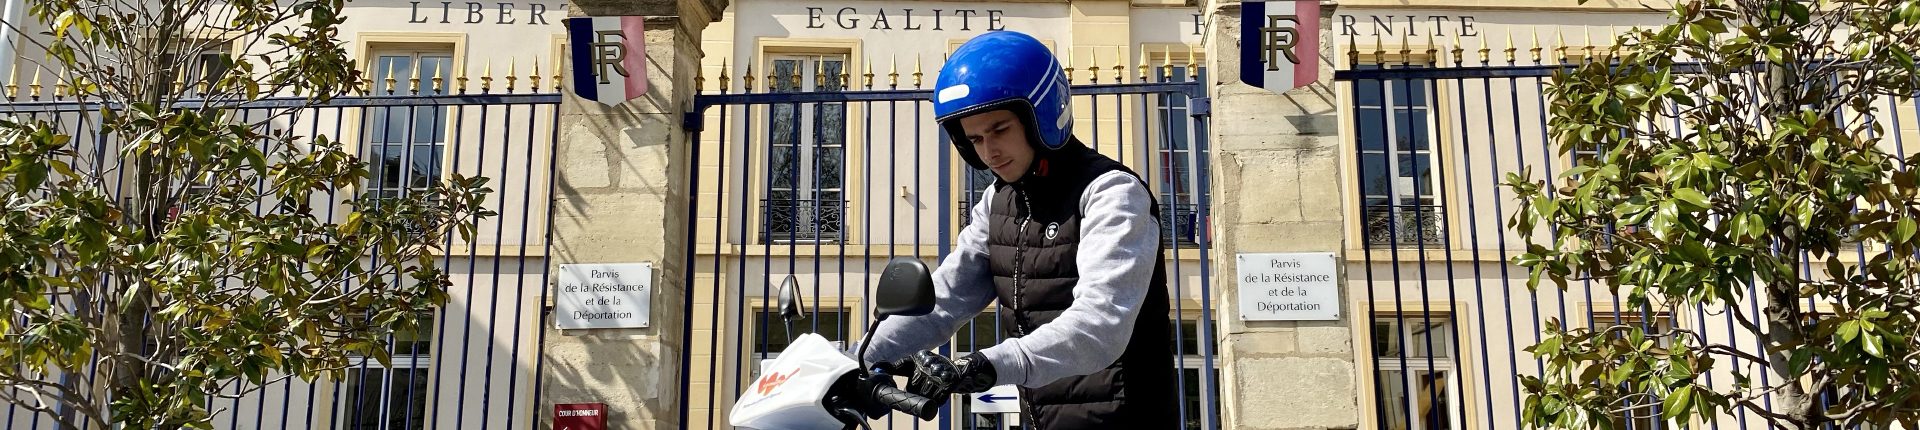 Des scooters électriques en libre-service à Sèvres